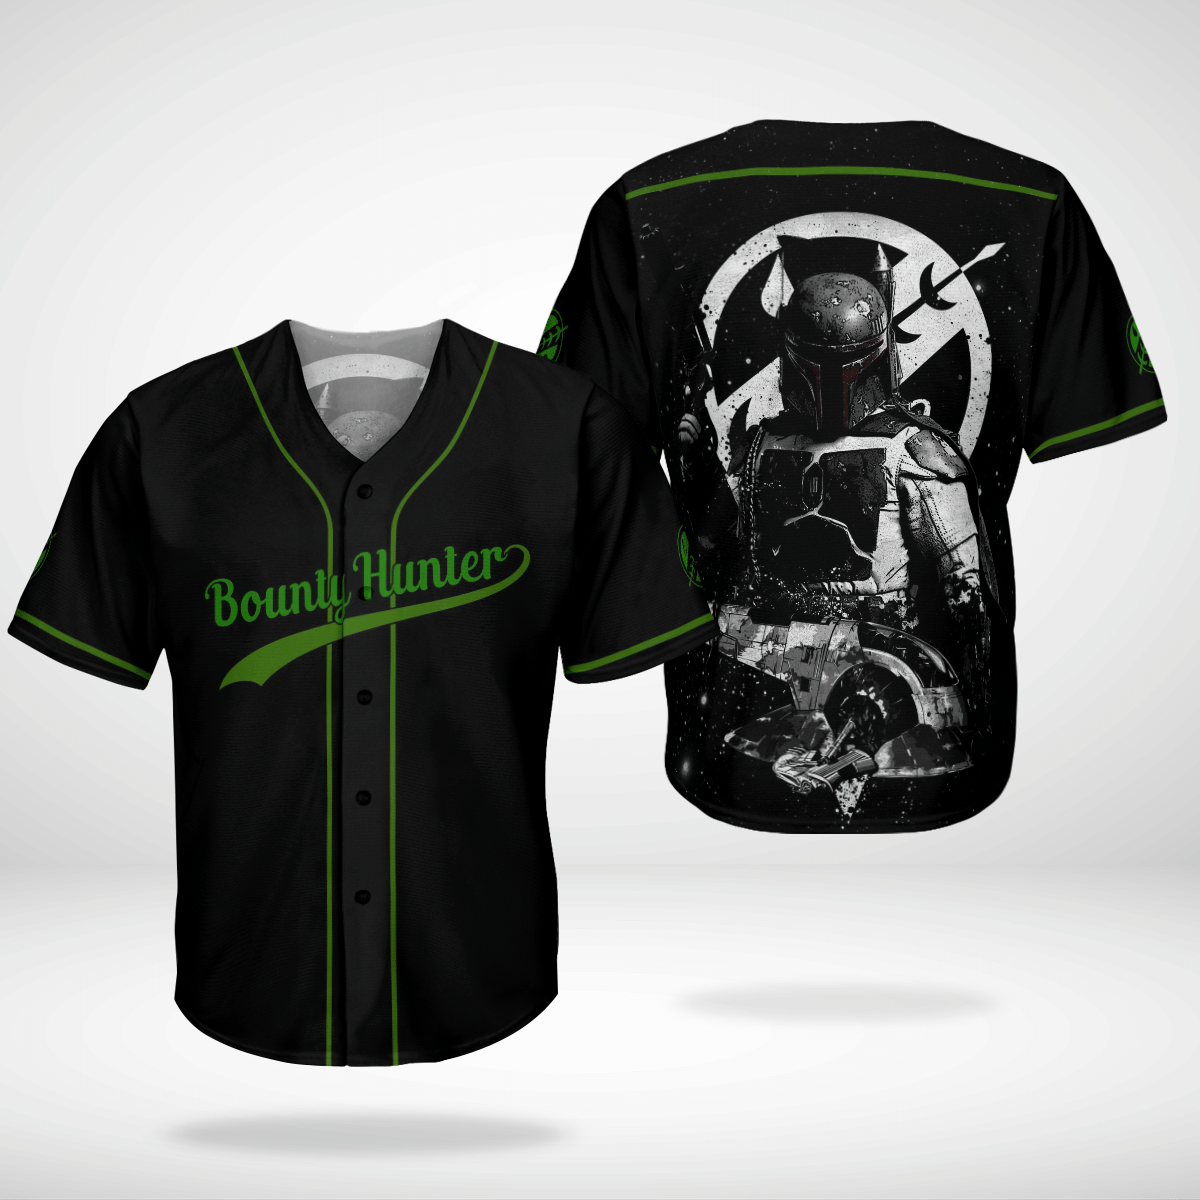 Bounty hunter baseball shirt 3